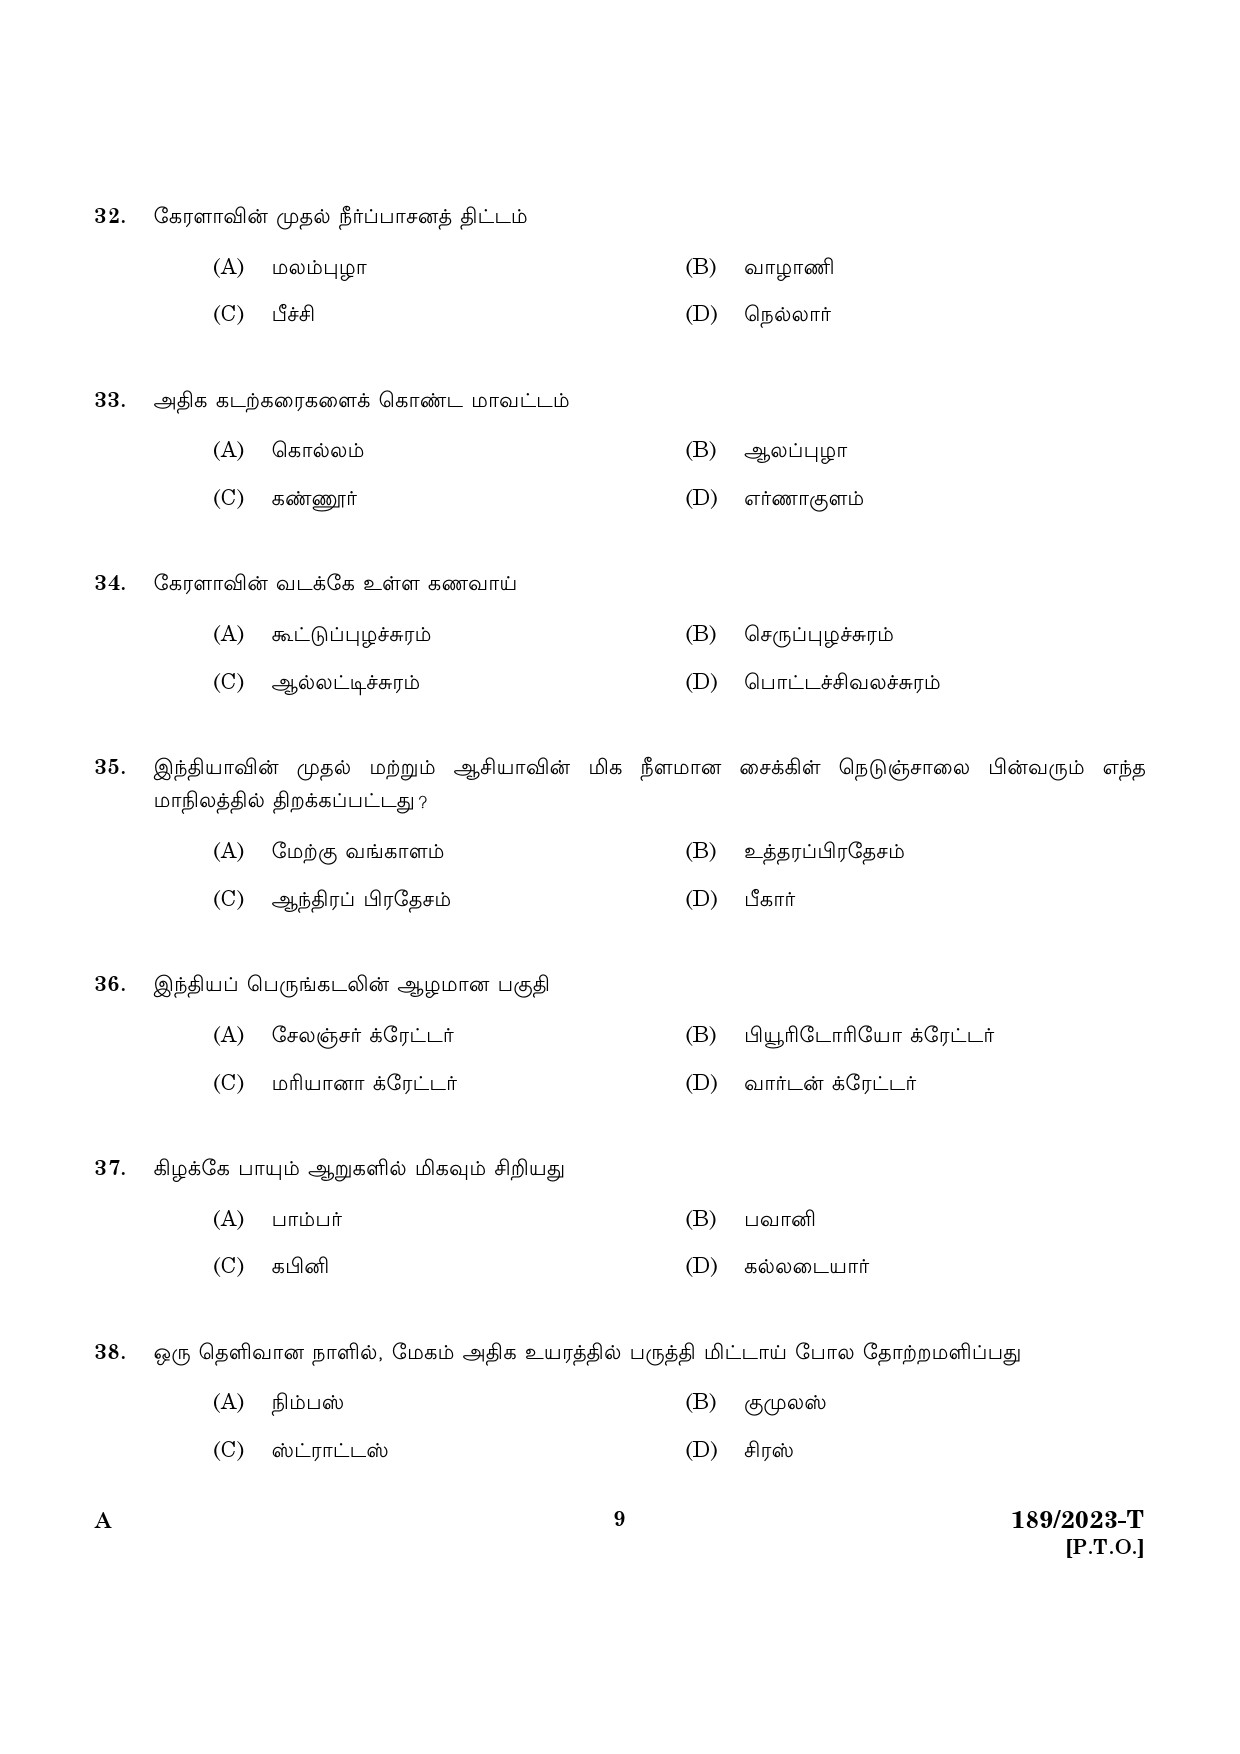 KPSC LGS Tamil Exam 2023 Code 1892023 T 7